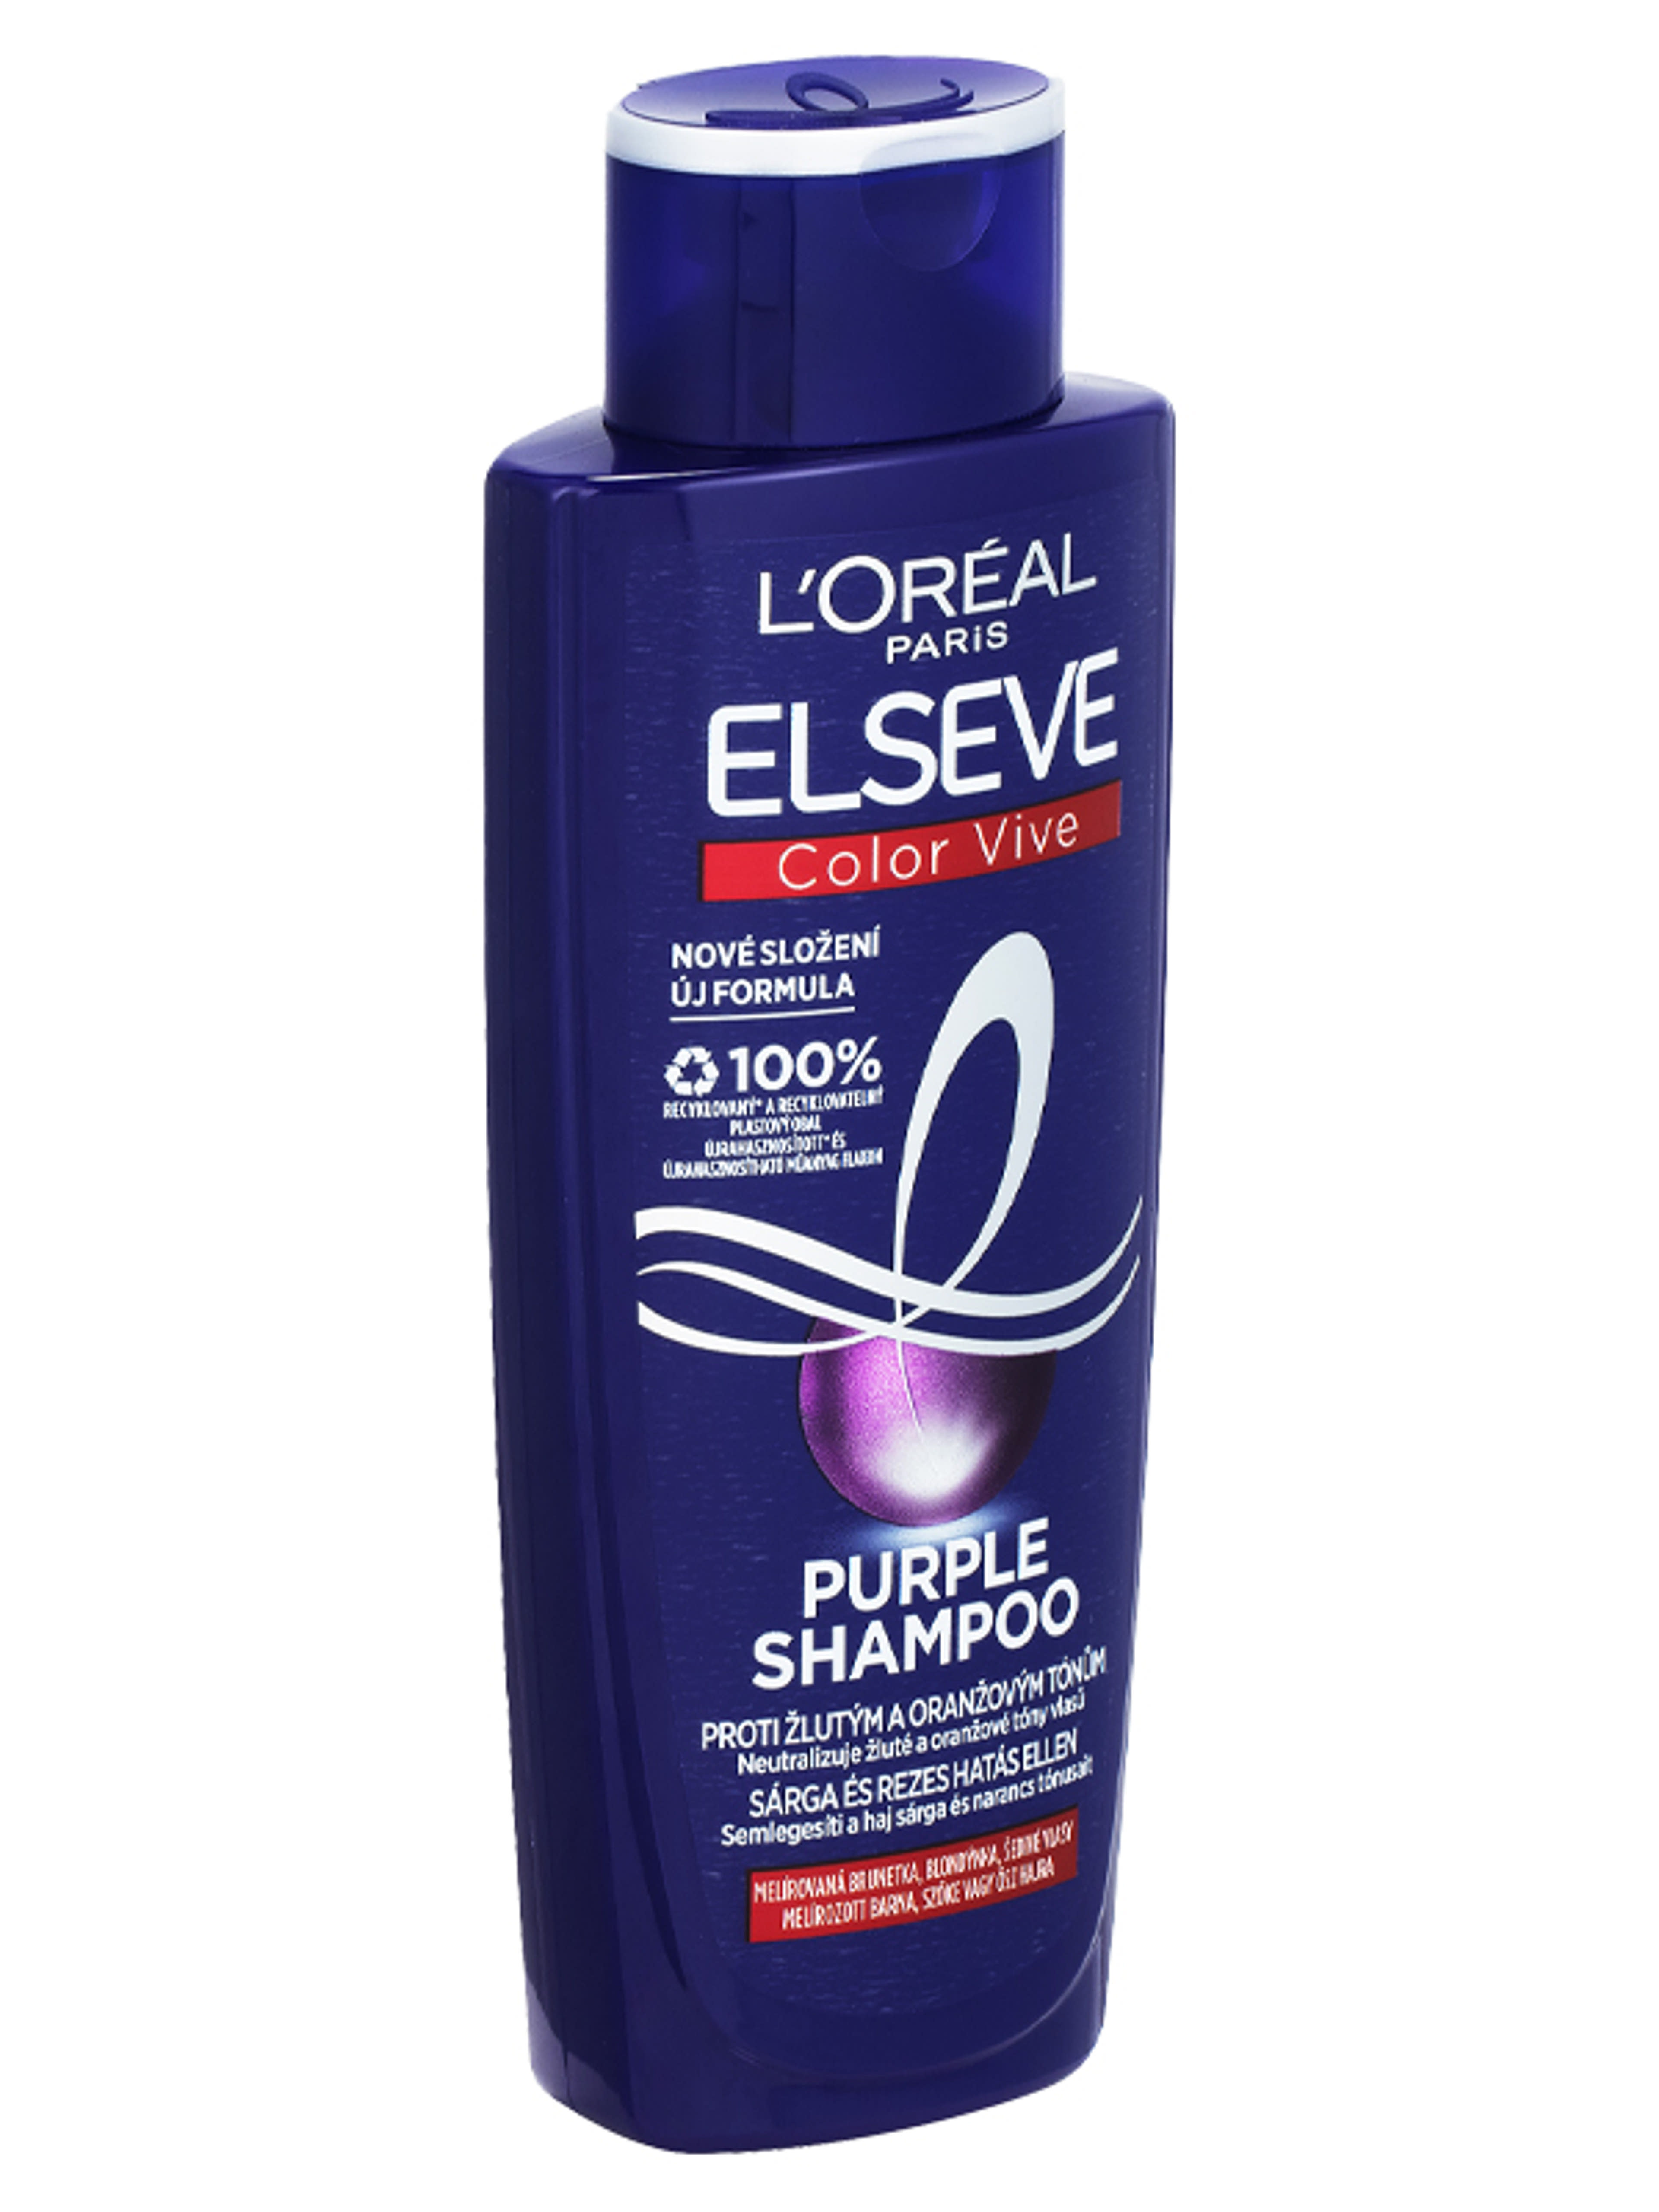 L'Oréal Paris Elseve Purple sampon sárga és rezes hatás ellen - 200 ml-4